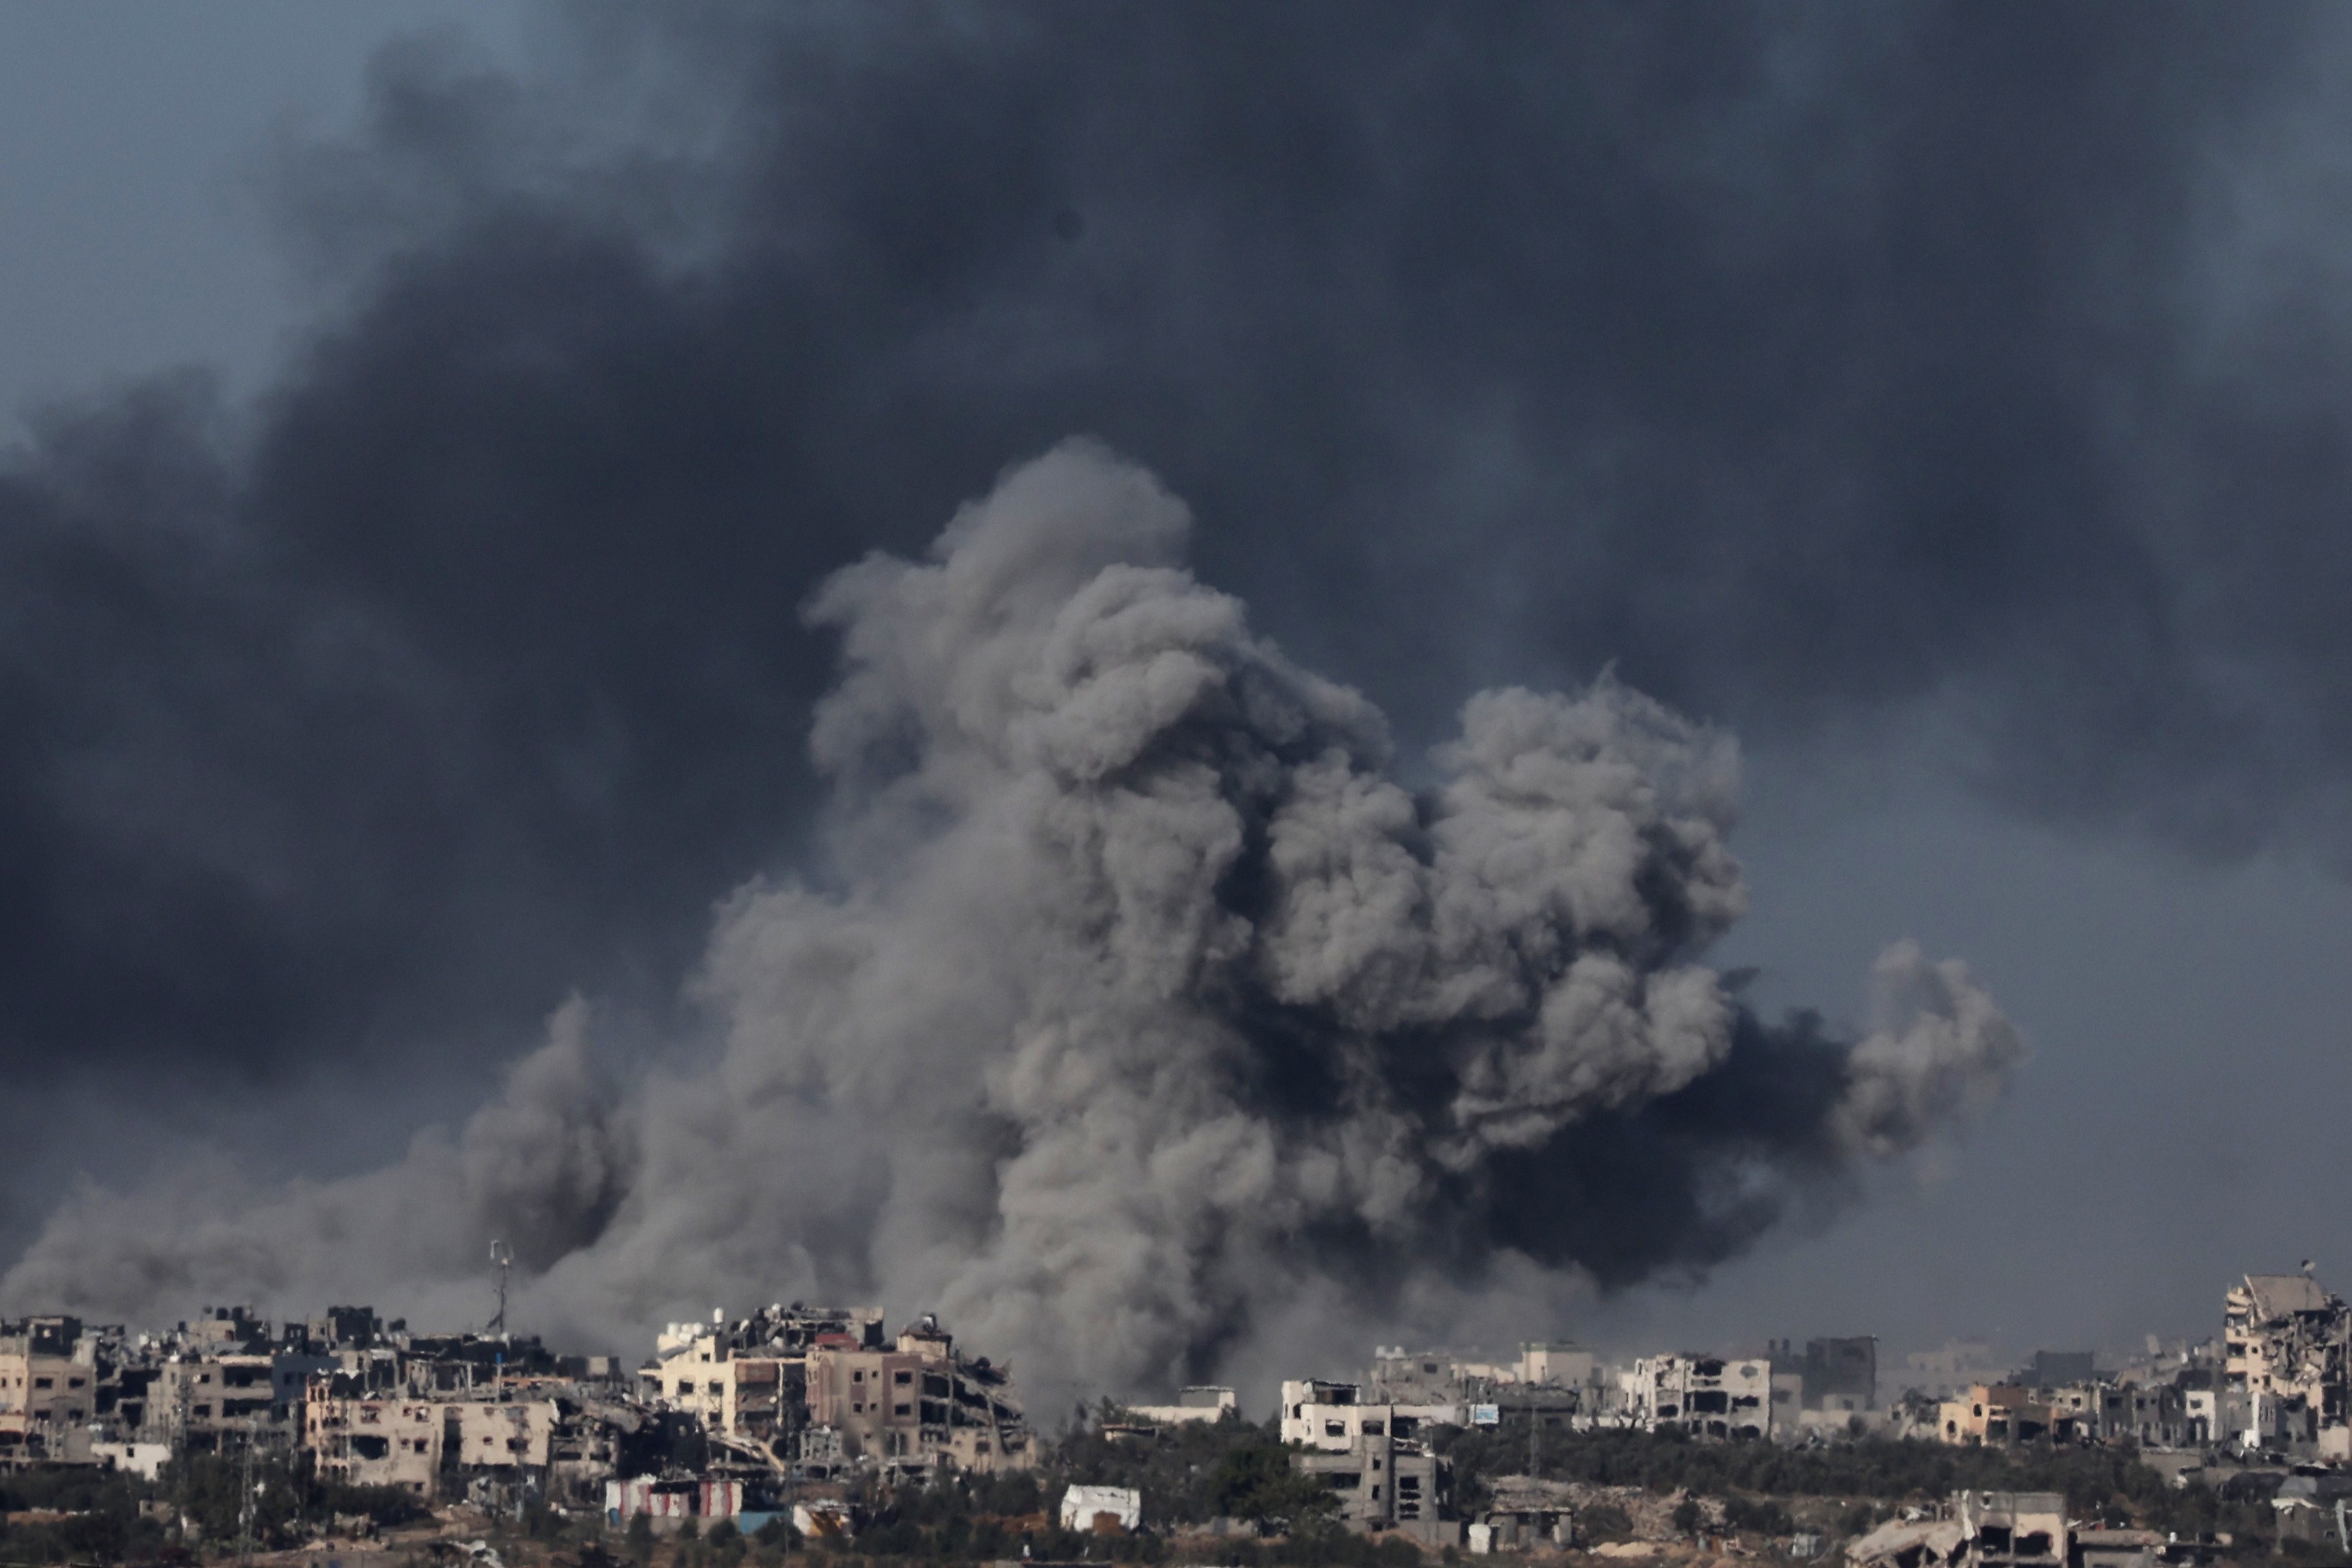 Les operacions de l'exèrcit d'Israel al sud de Gaza: "Ara estem lluitant cos a cos"